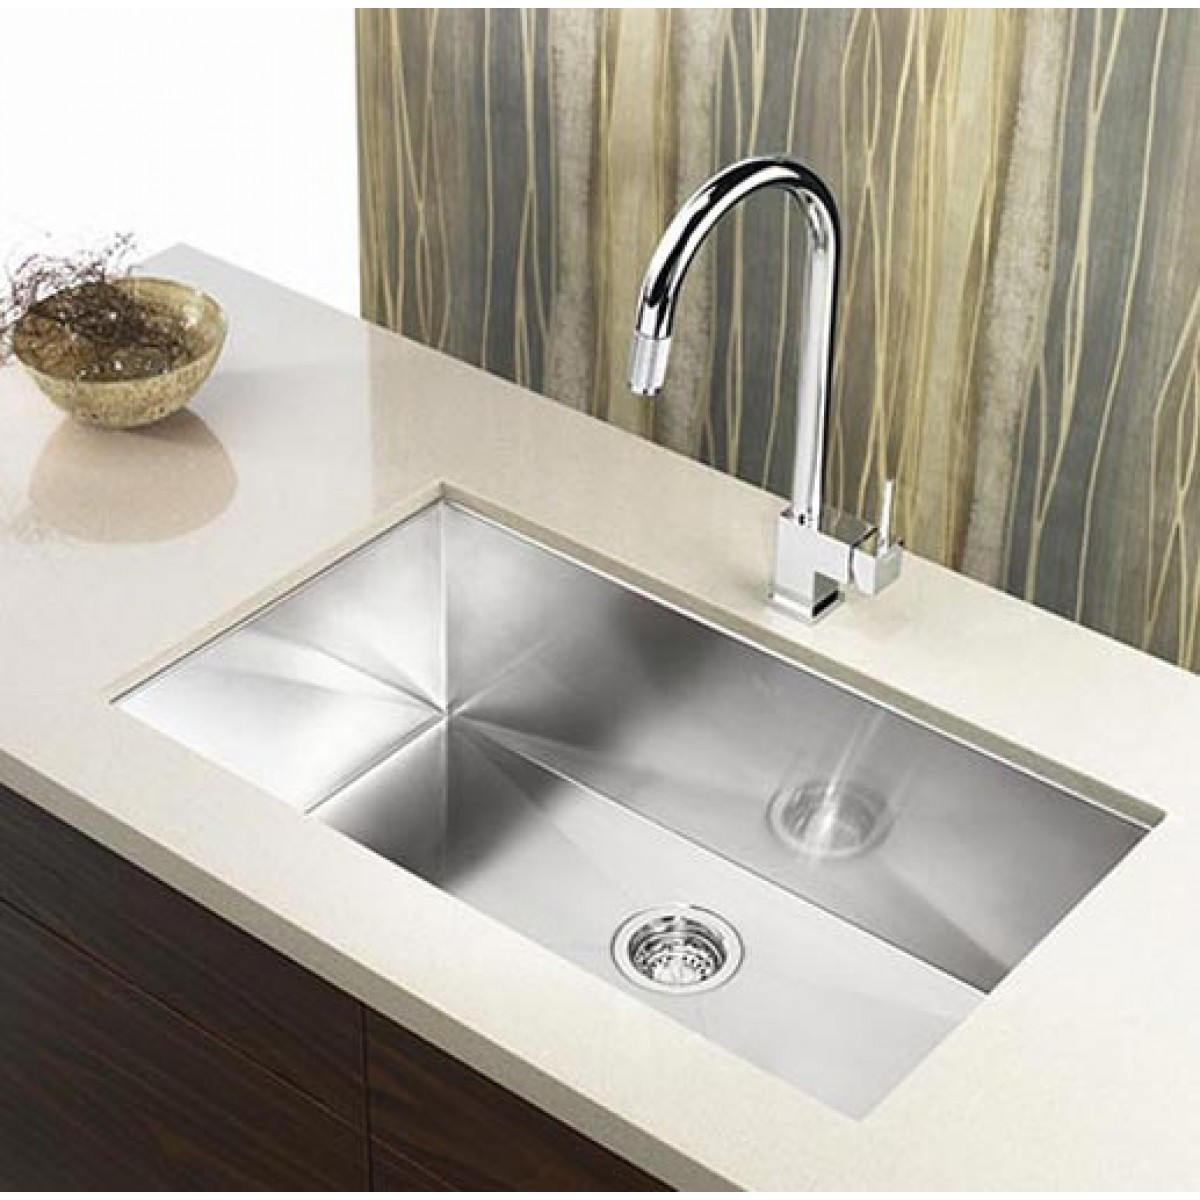 30-inch Undermount Single Bowl Stainless Steel Kitchen Sink